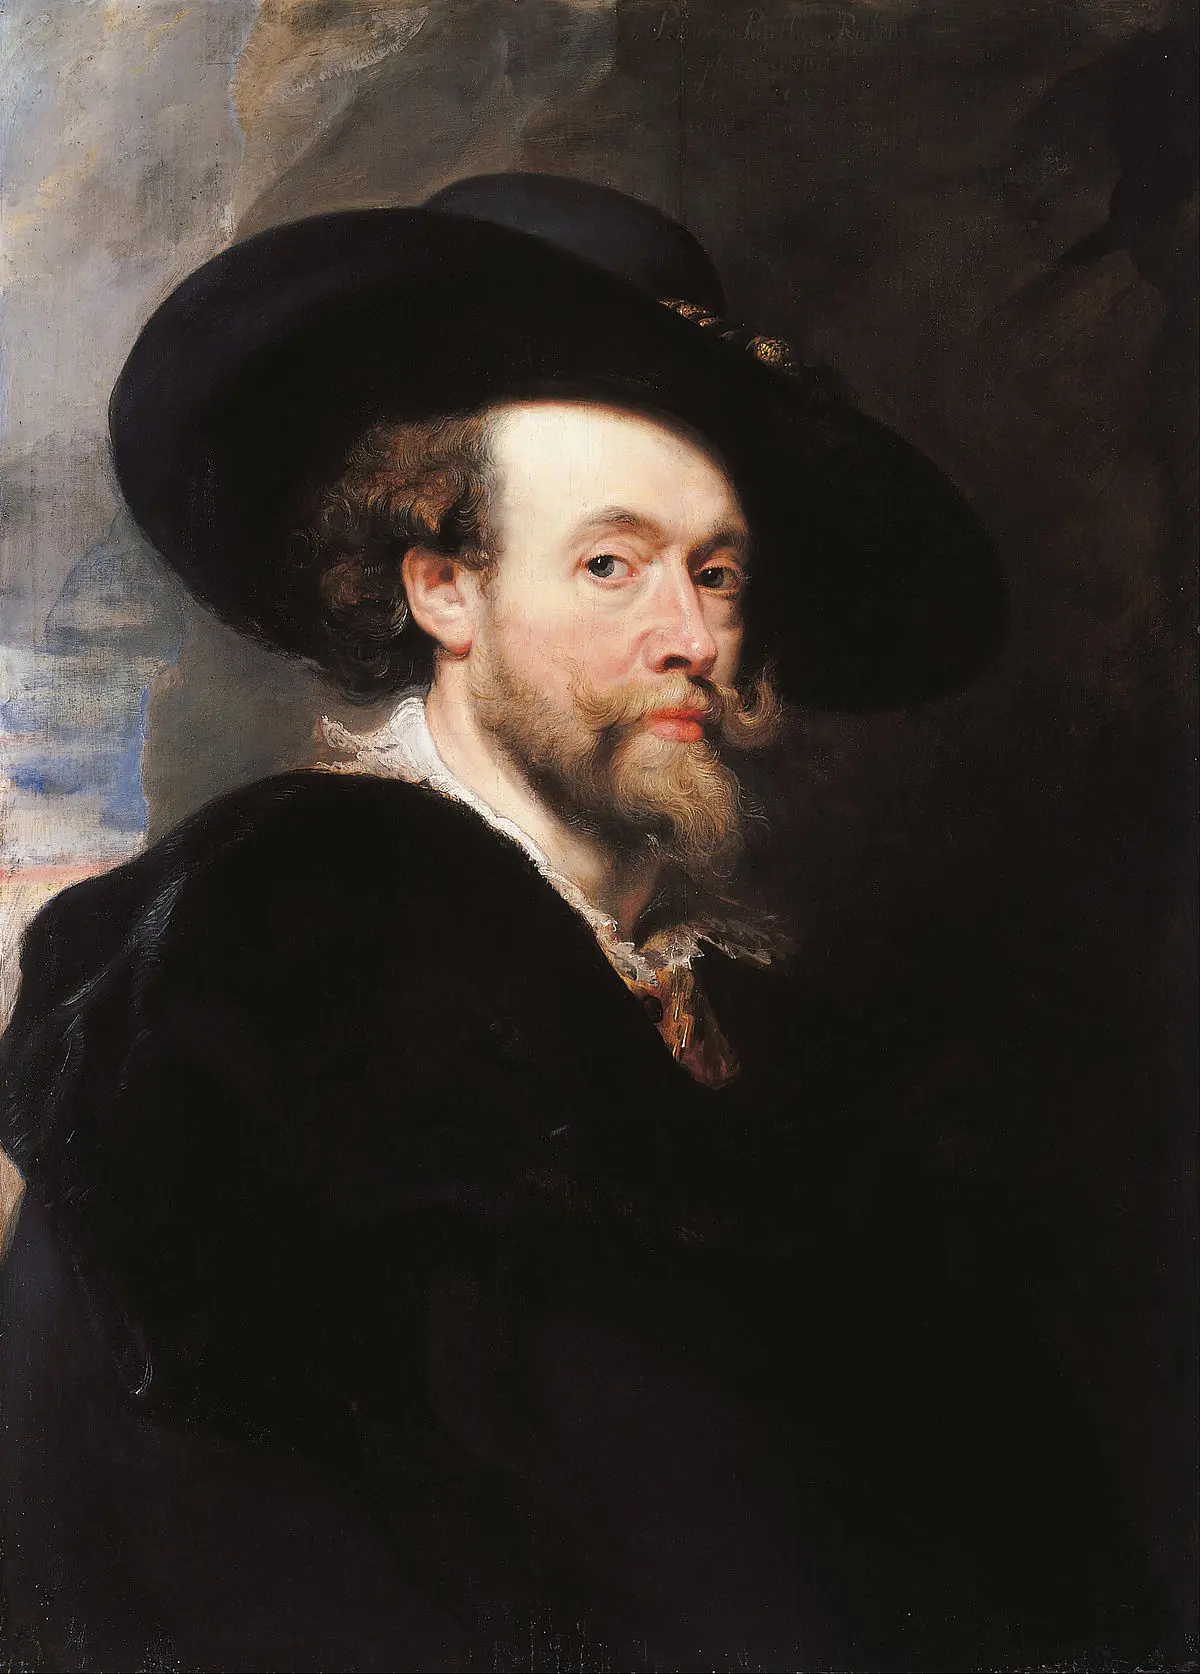 rubens el prado - Cuál es la pintura más famosa de Pedro Pablo Rubens